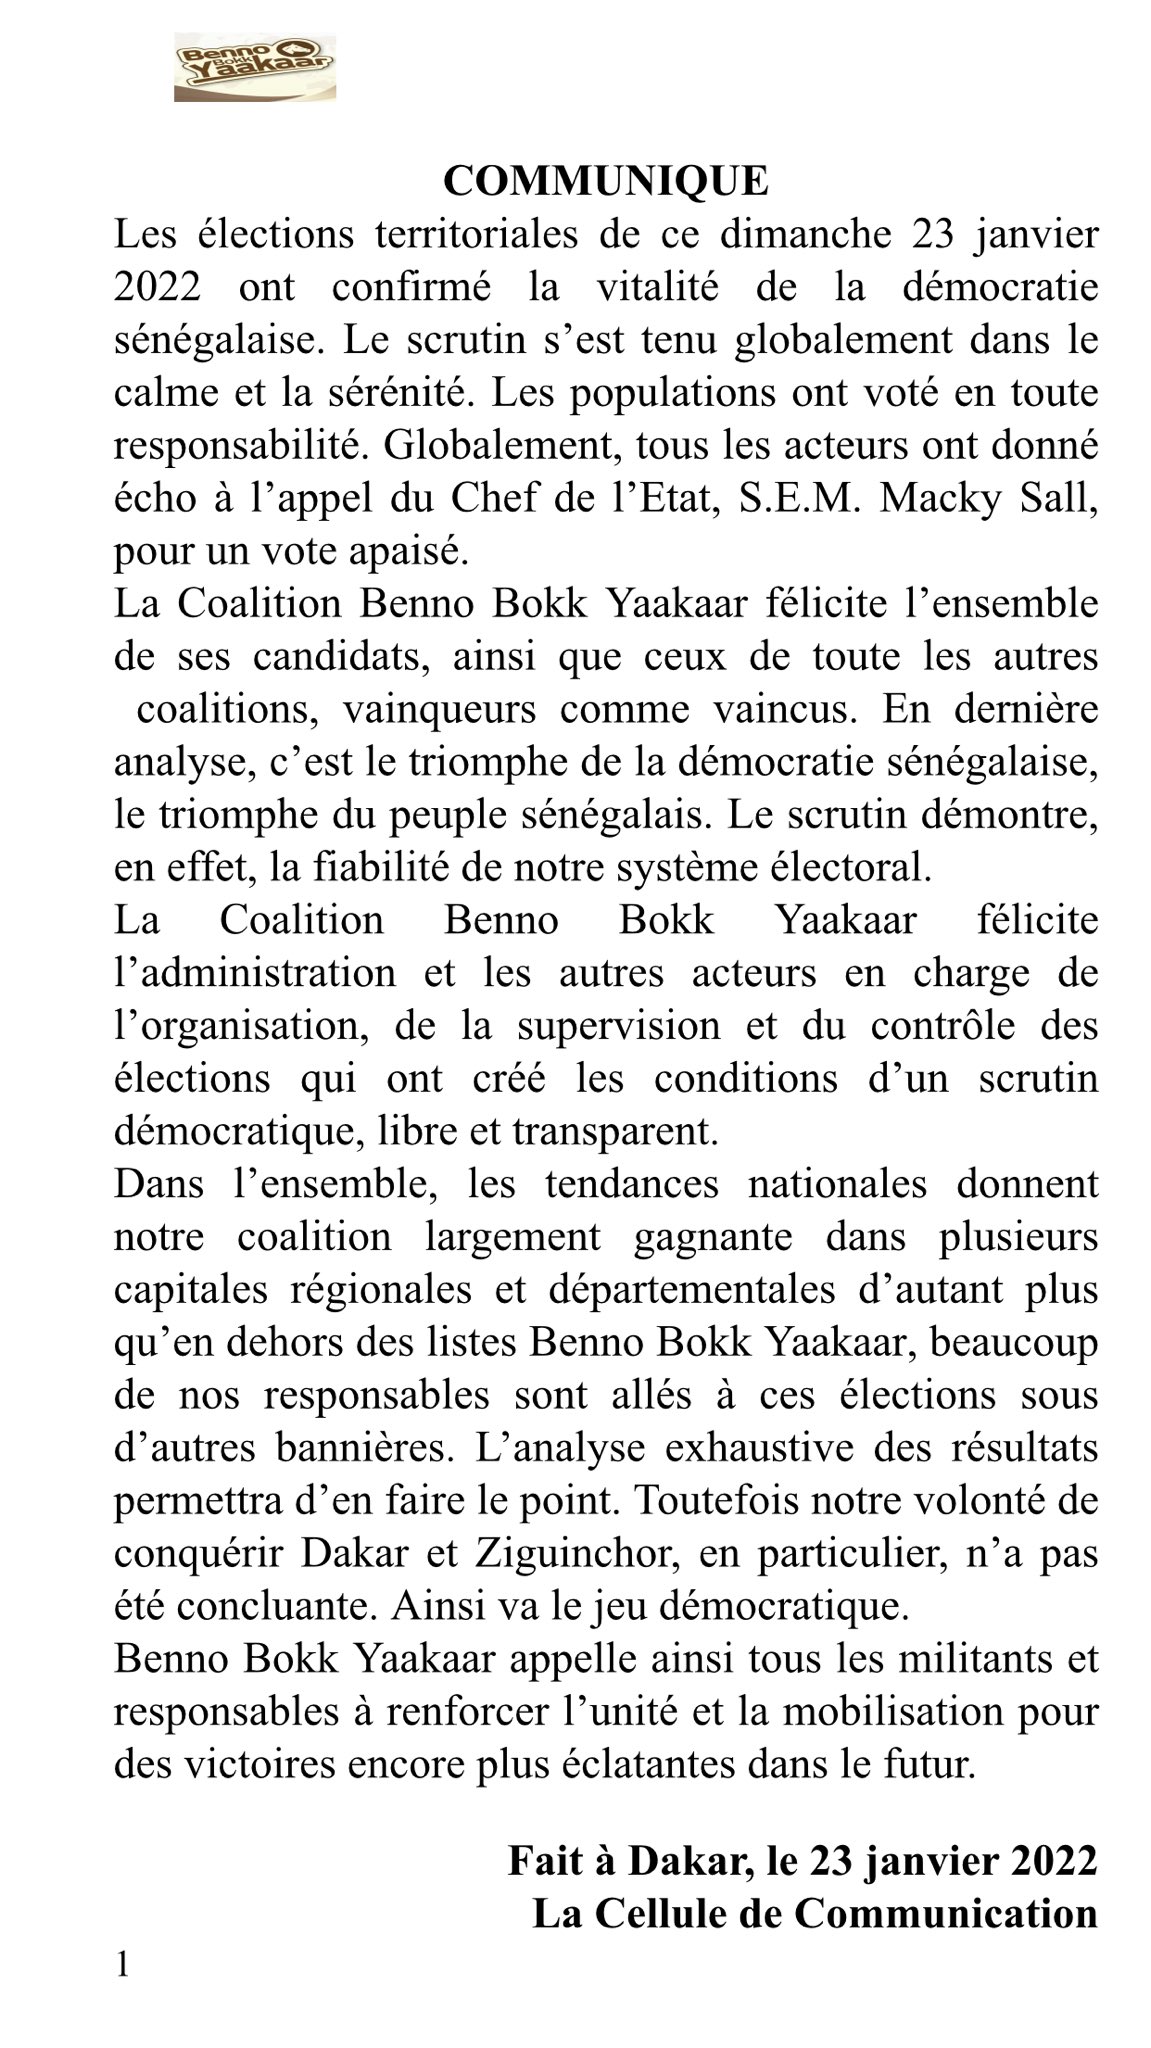 Benno Bokk Yakaar reconnaît ses défaites à Dakar et Ziguinchor (Communiqué)